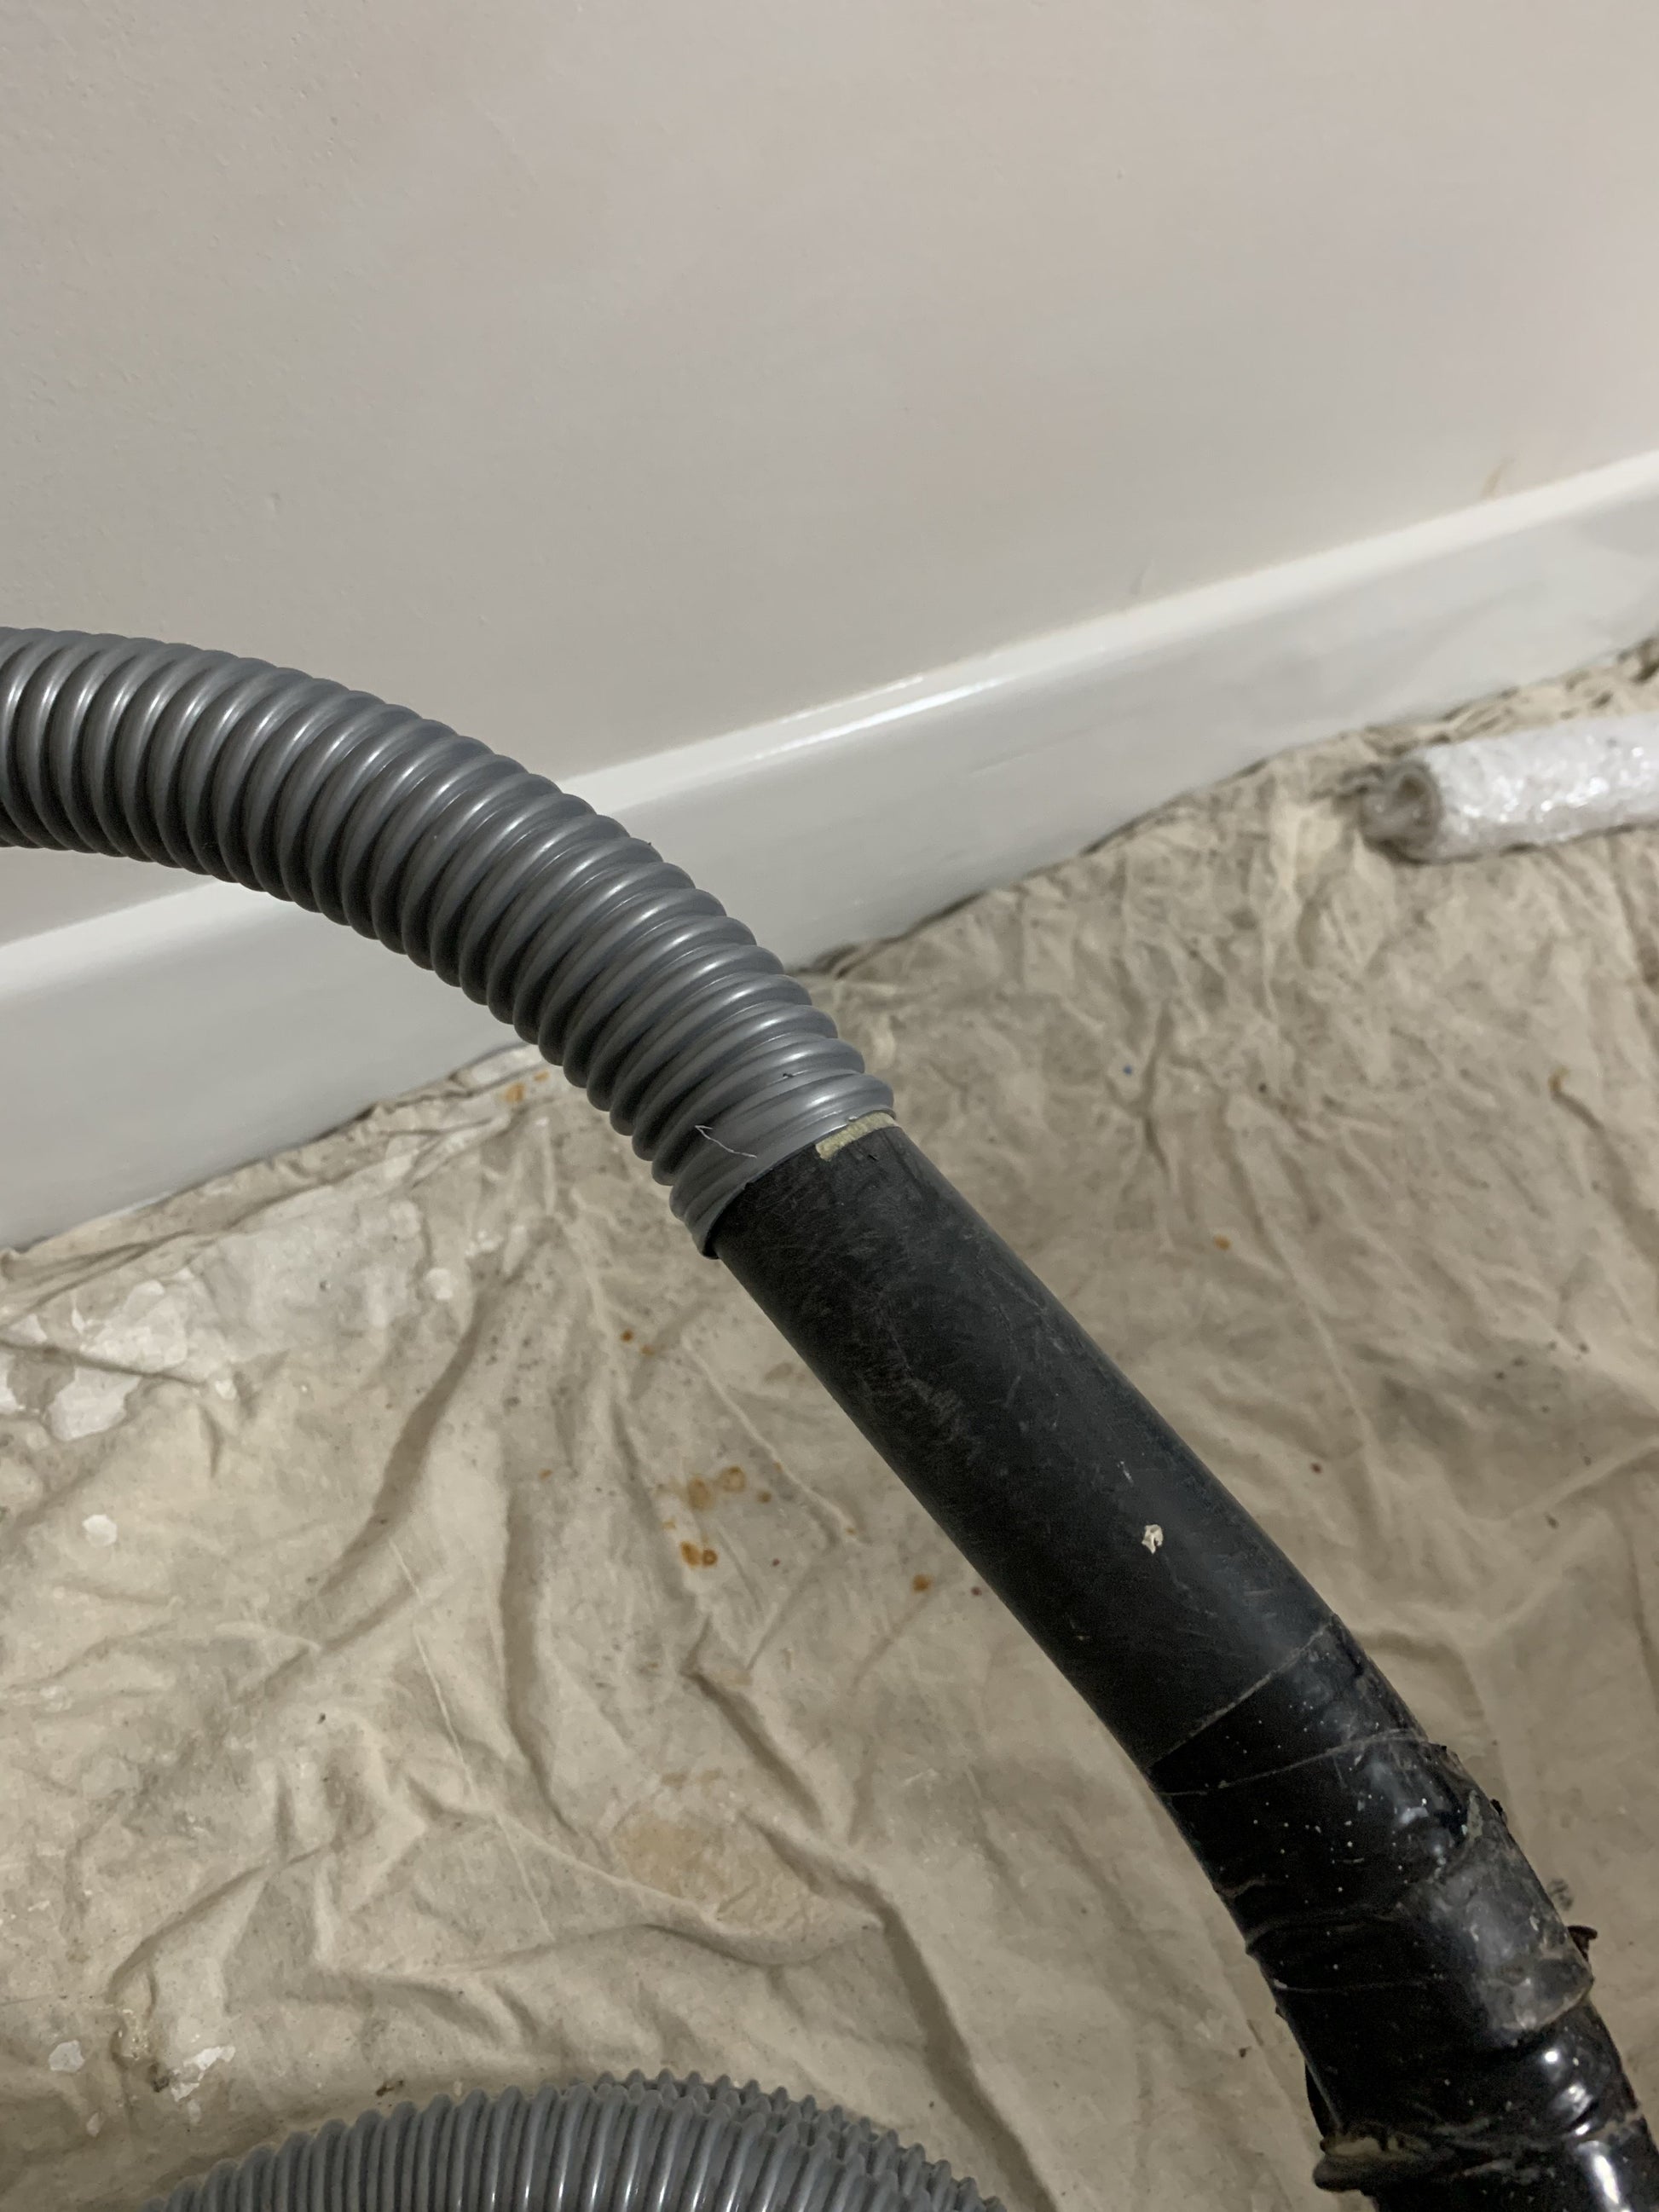 32mm vacuum hose